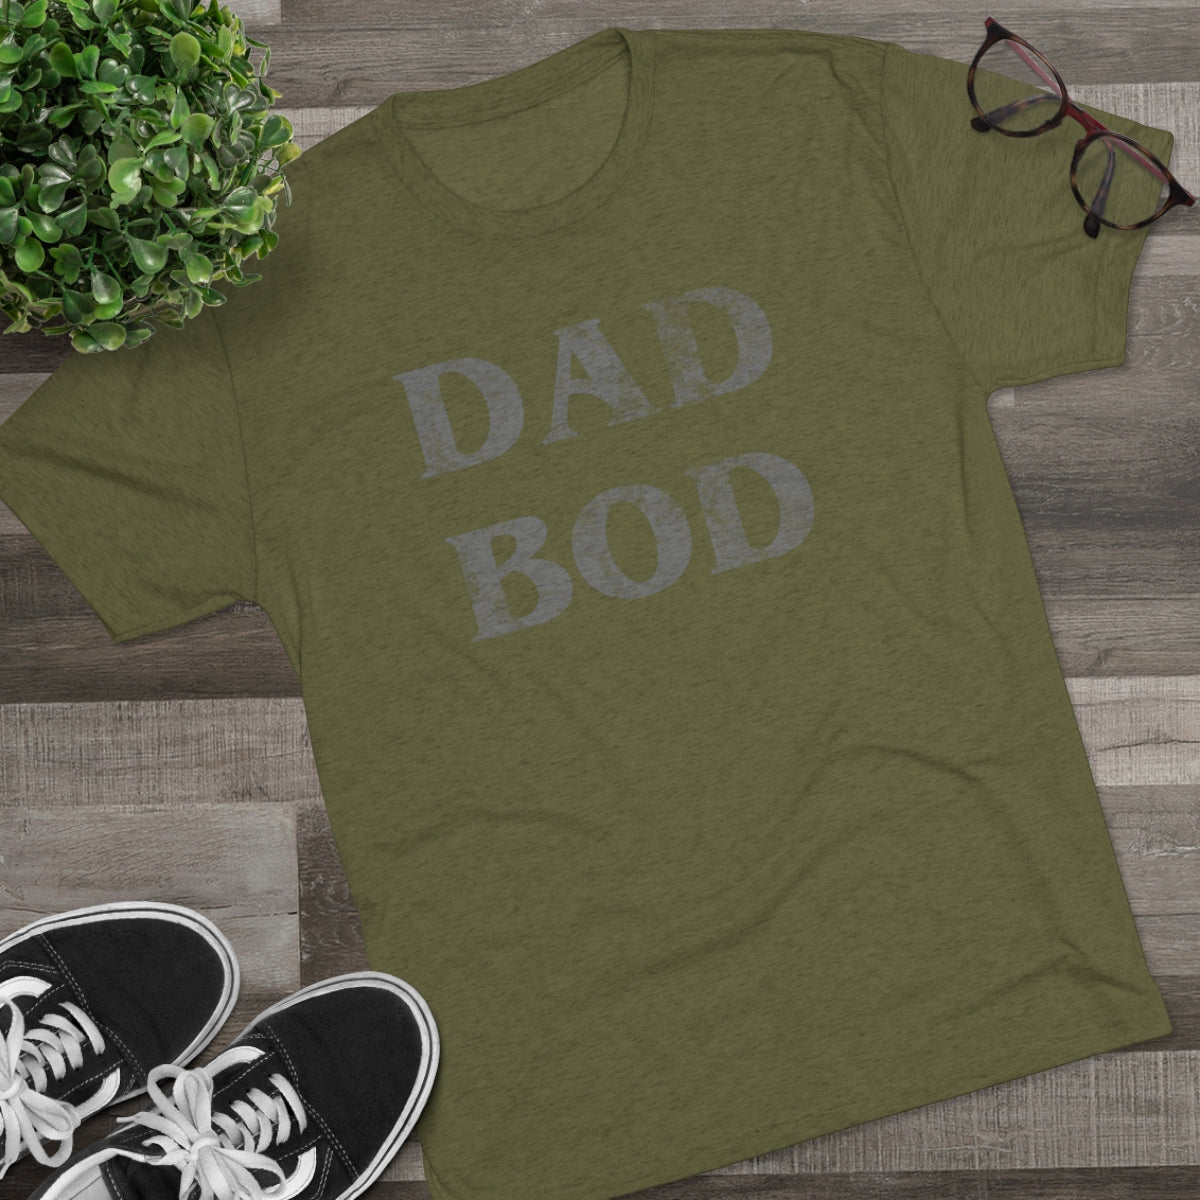 Dad bod shirt- Men